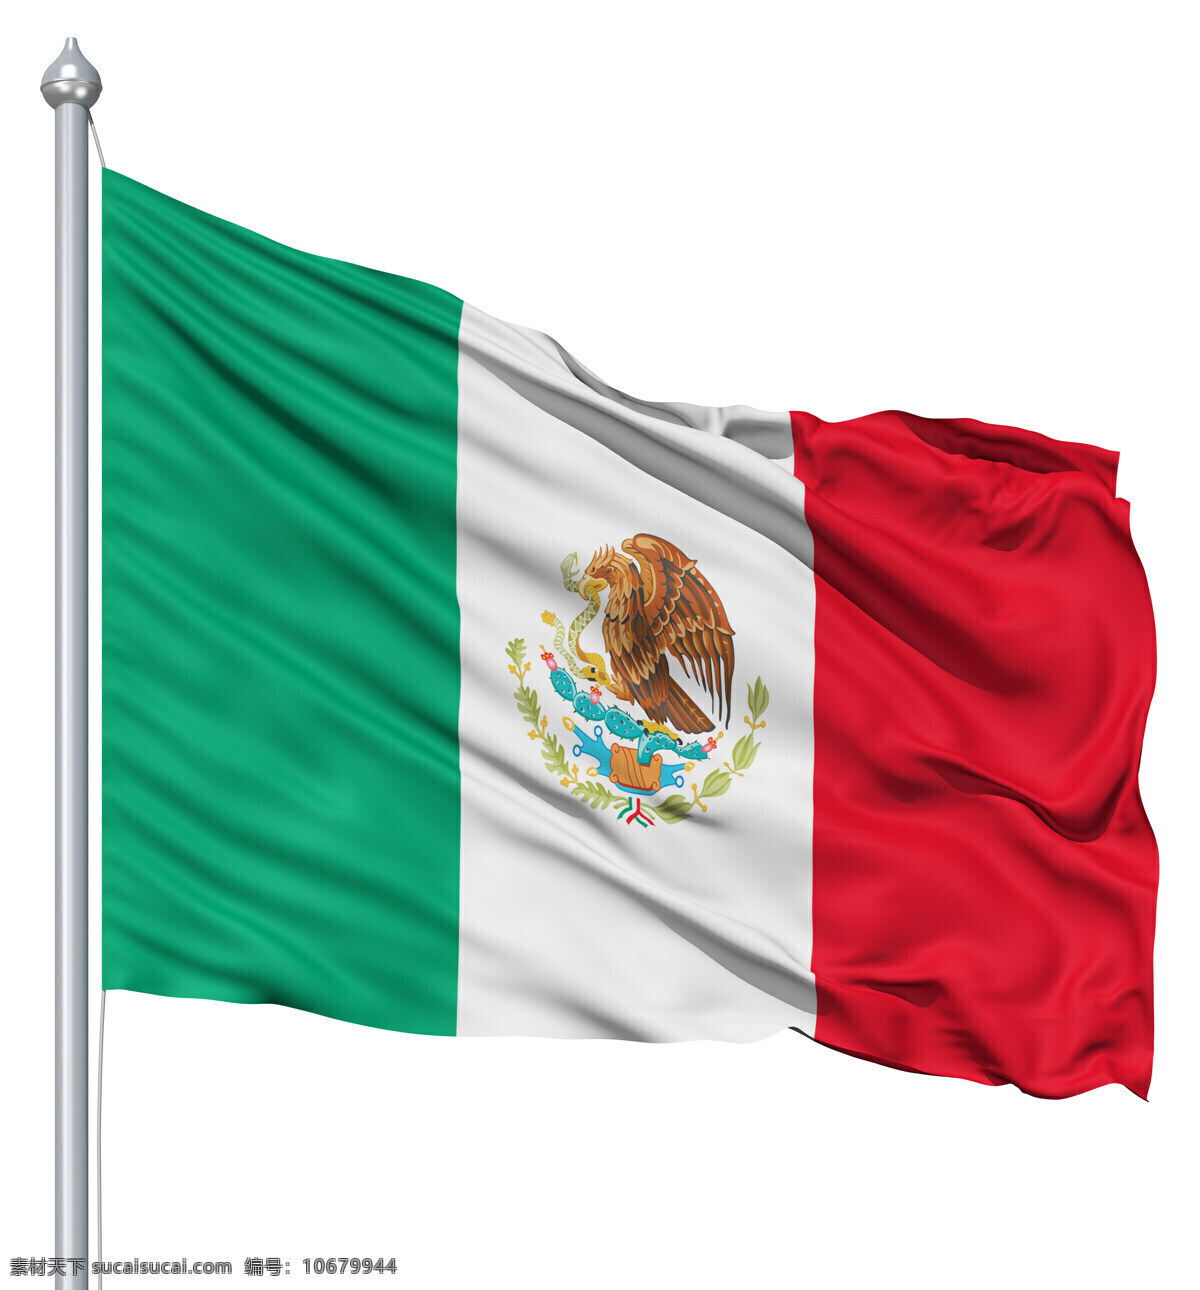 墨西哥 国旗 墨西哥国旗 旗帜 旗子 国旗飘扬 国旗图片 生活百科